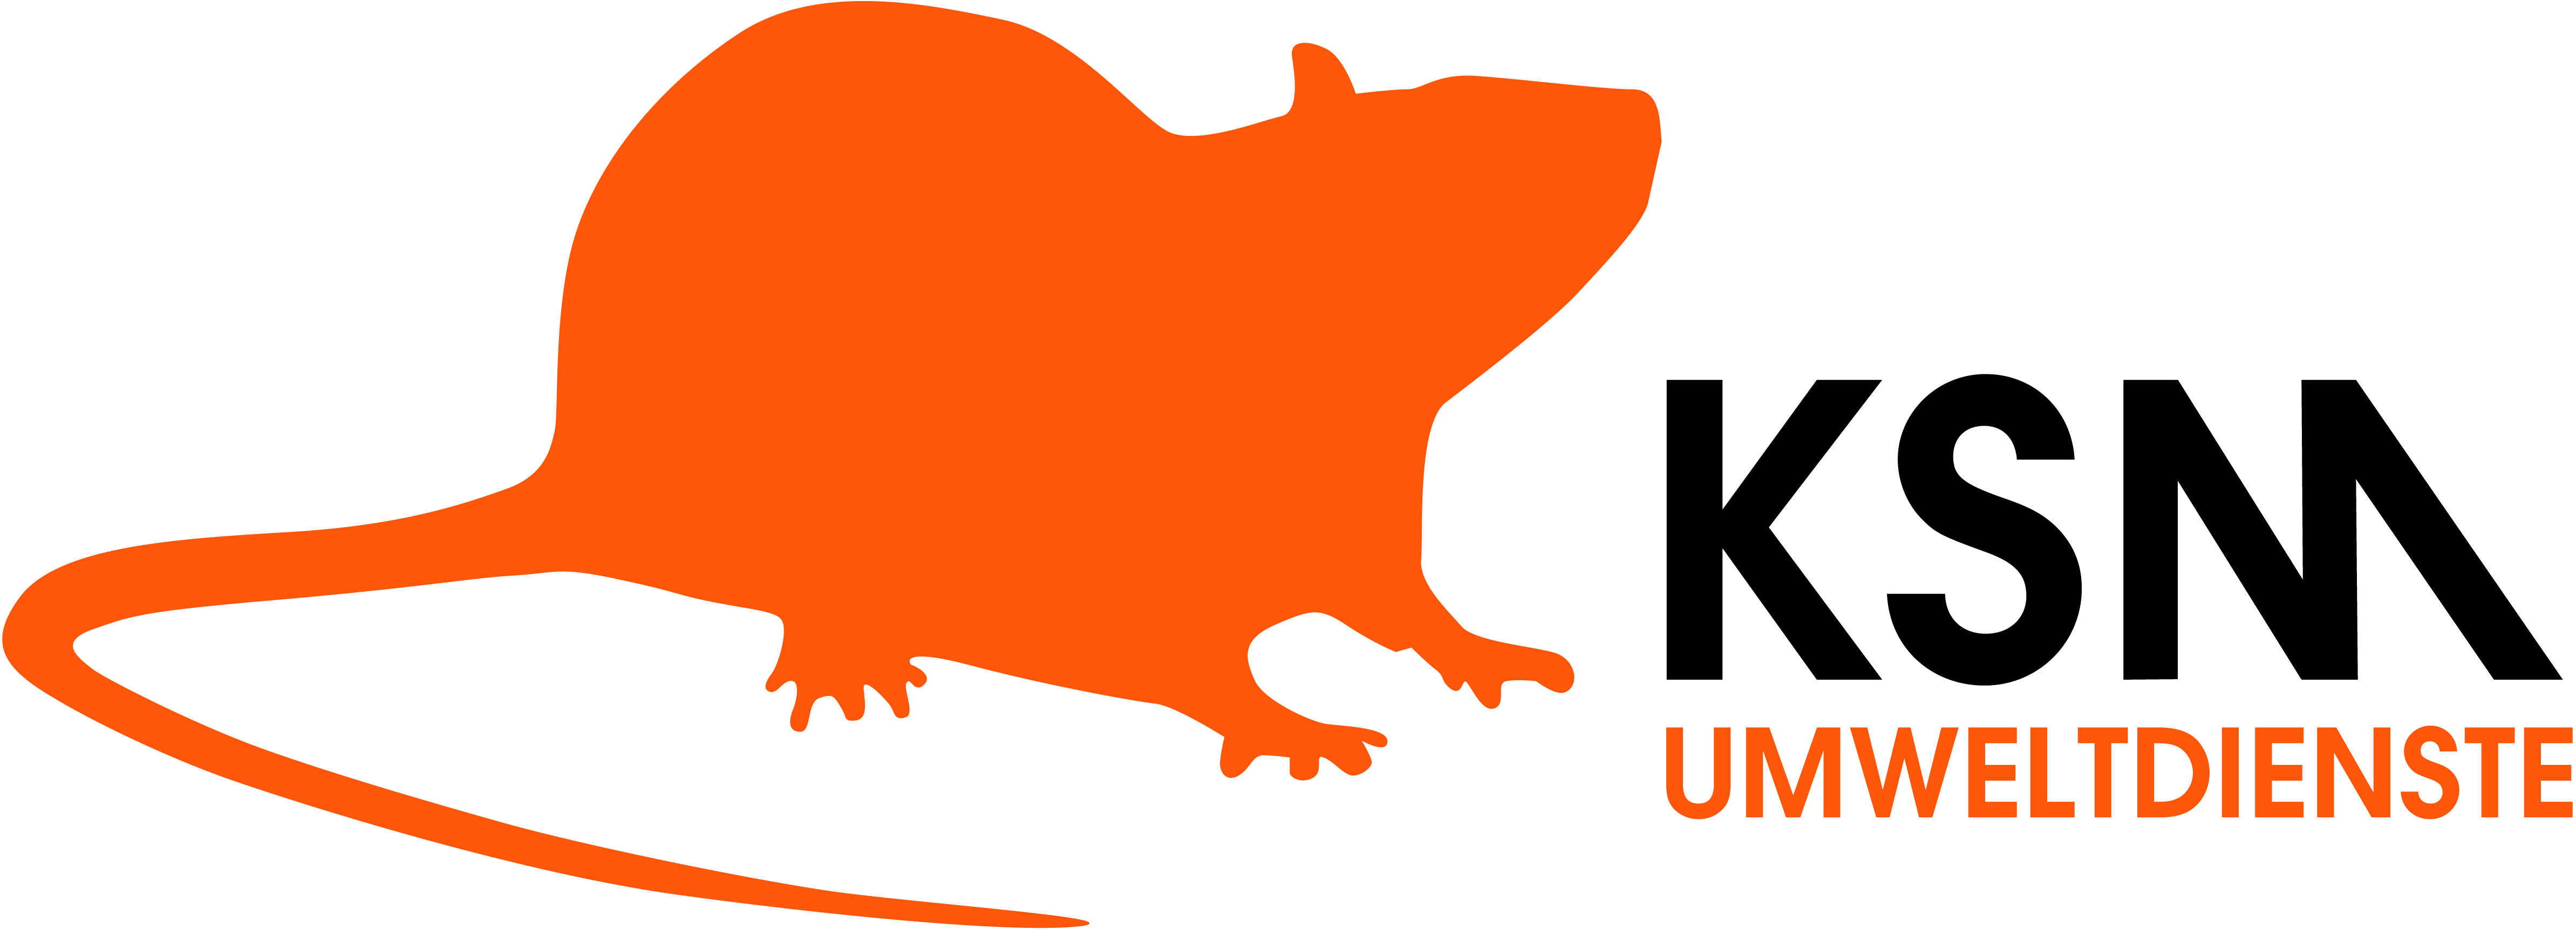 KSM Umweltdienste GmbH & Co. KG